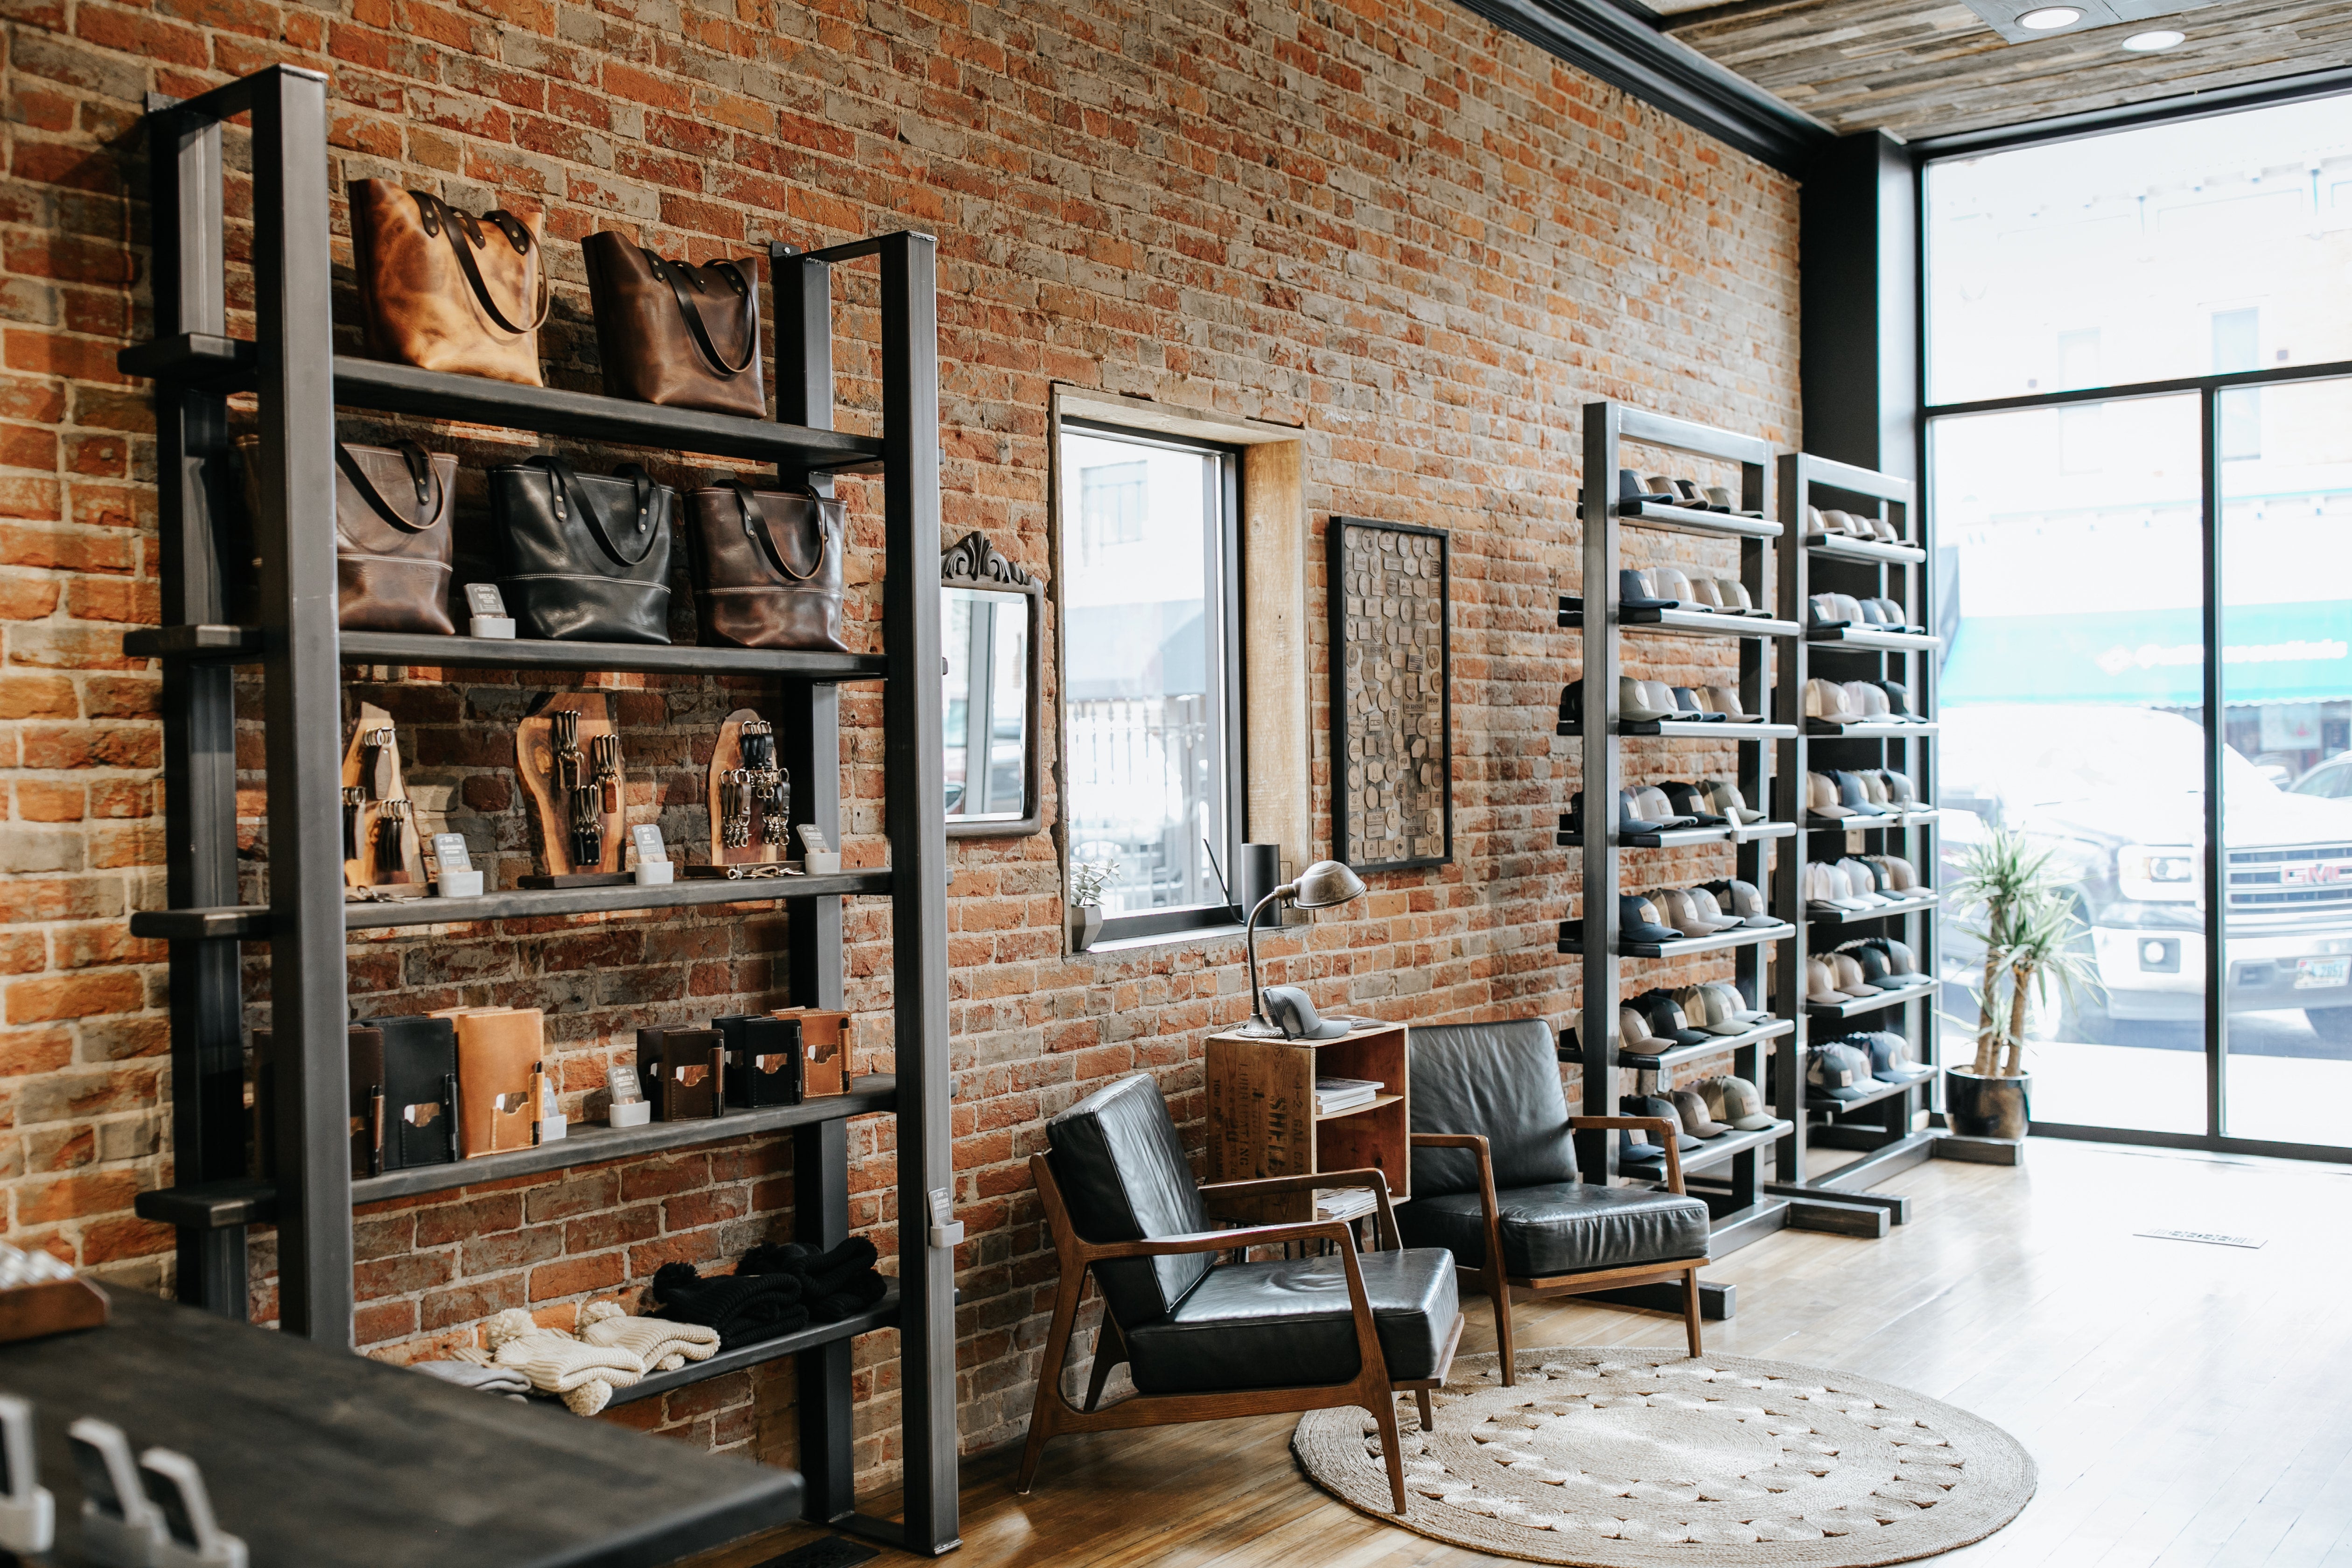 Wyoming Established Hat – Range Leather Co